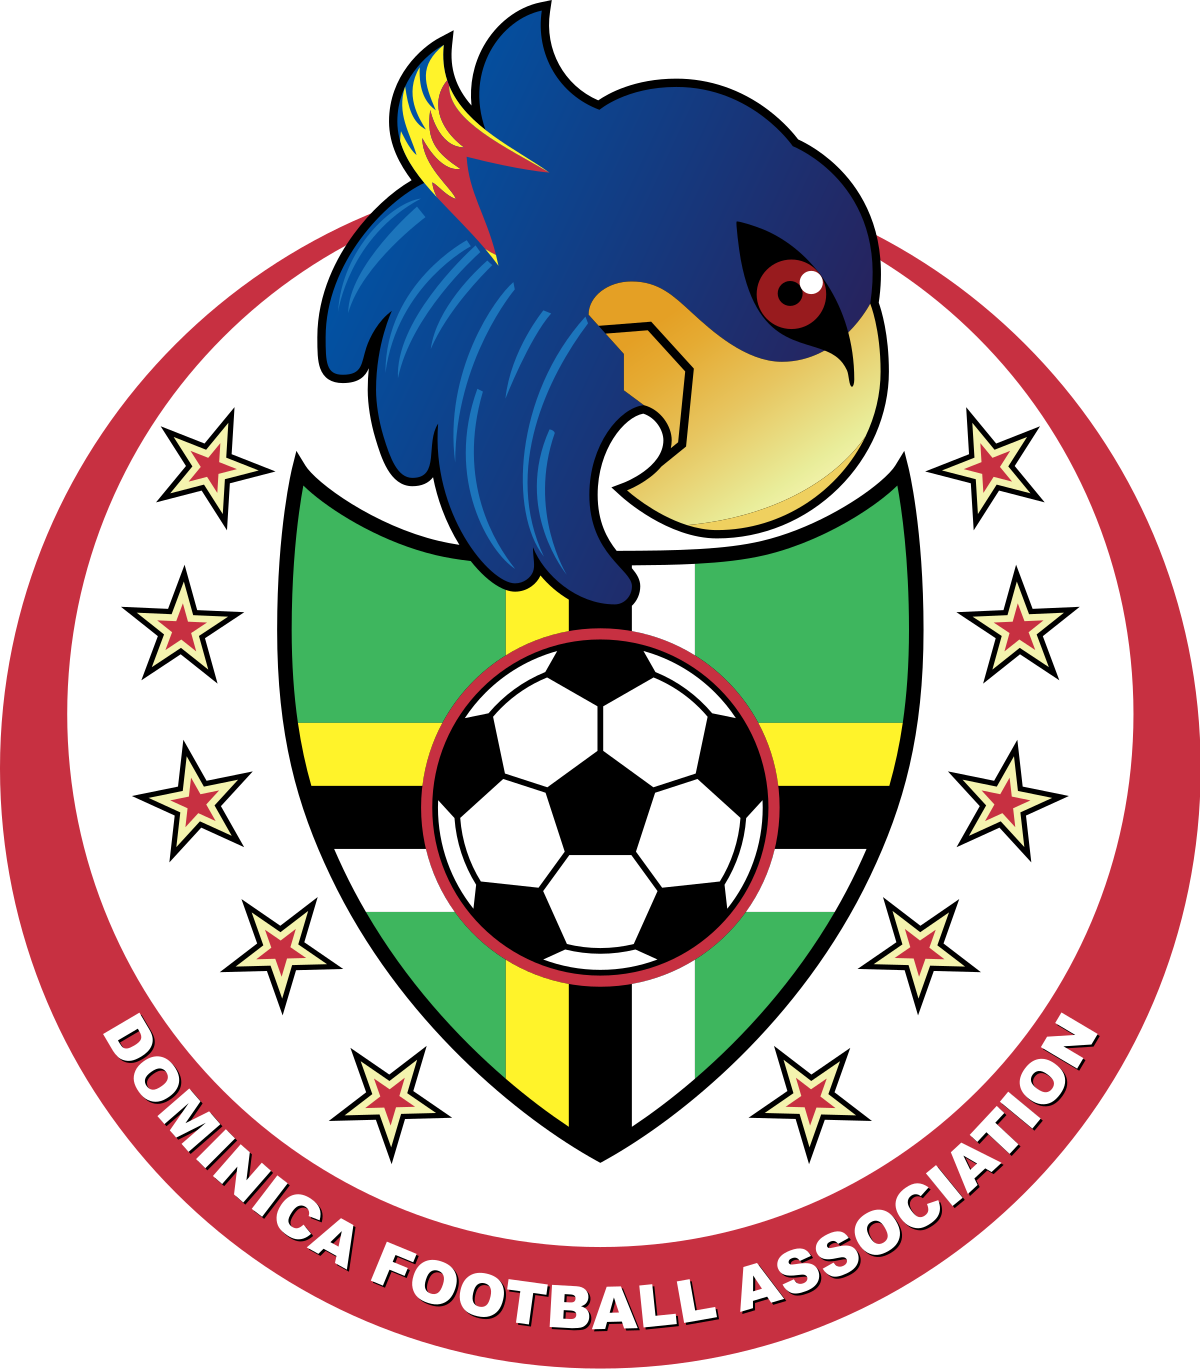 Domenica U-20 logo